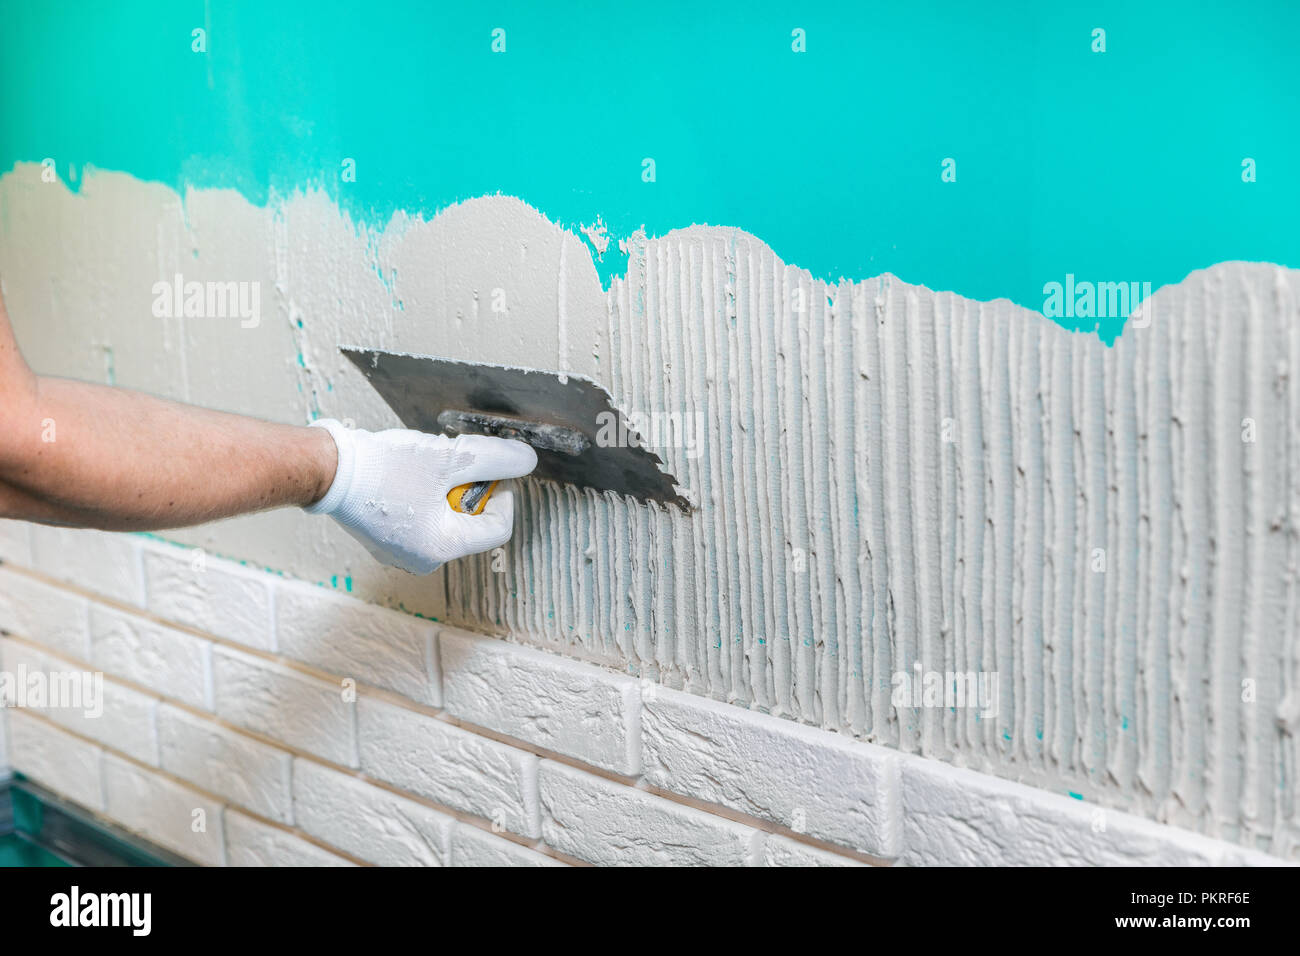 tiler applying tile adhesive on the wall Stock Photo